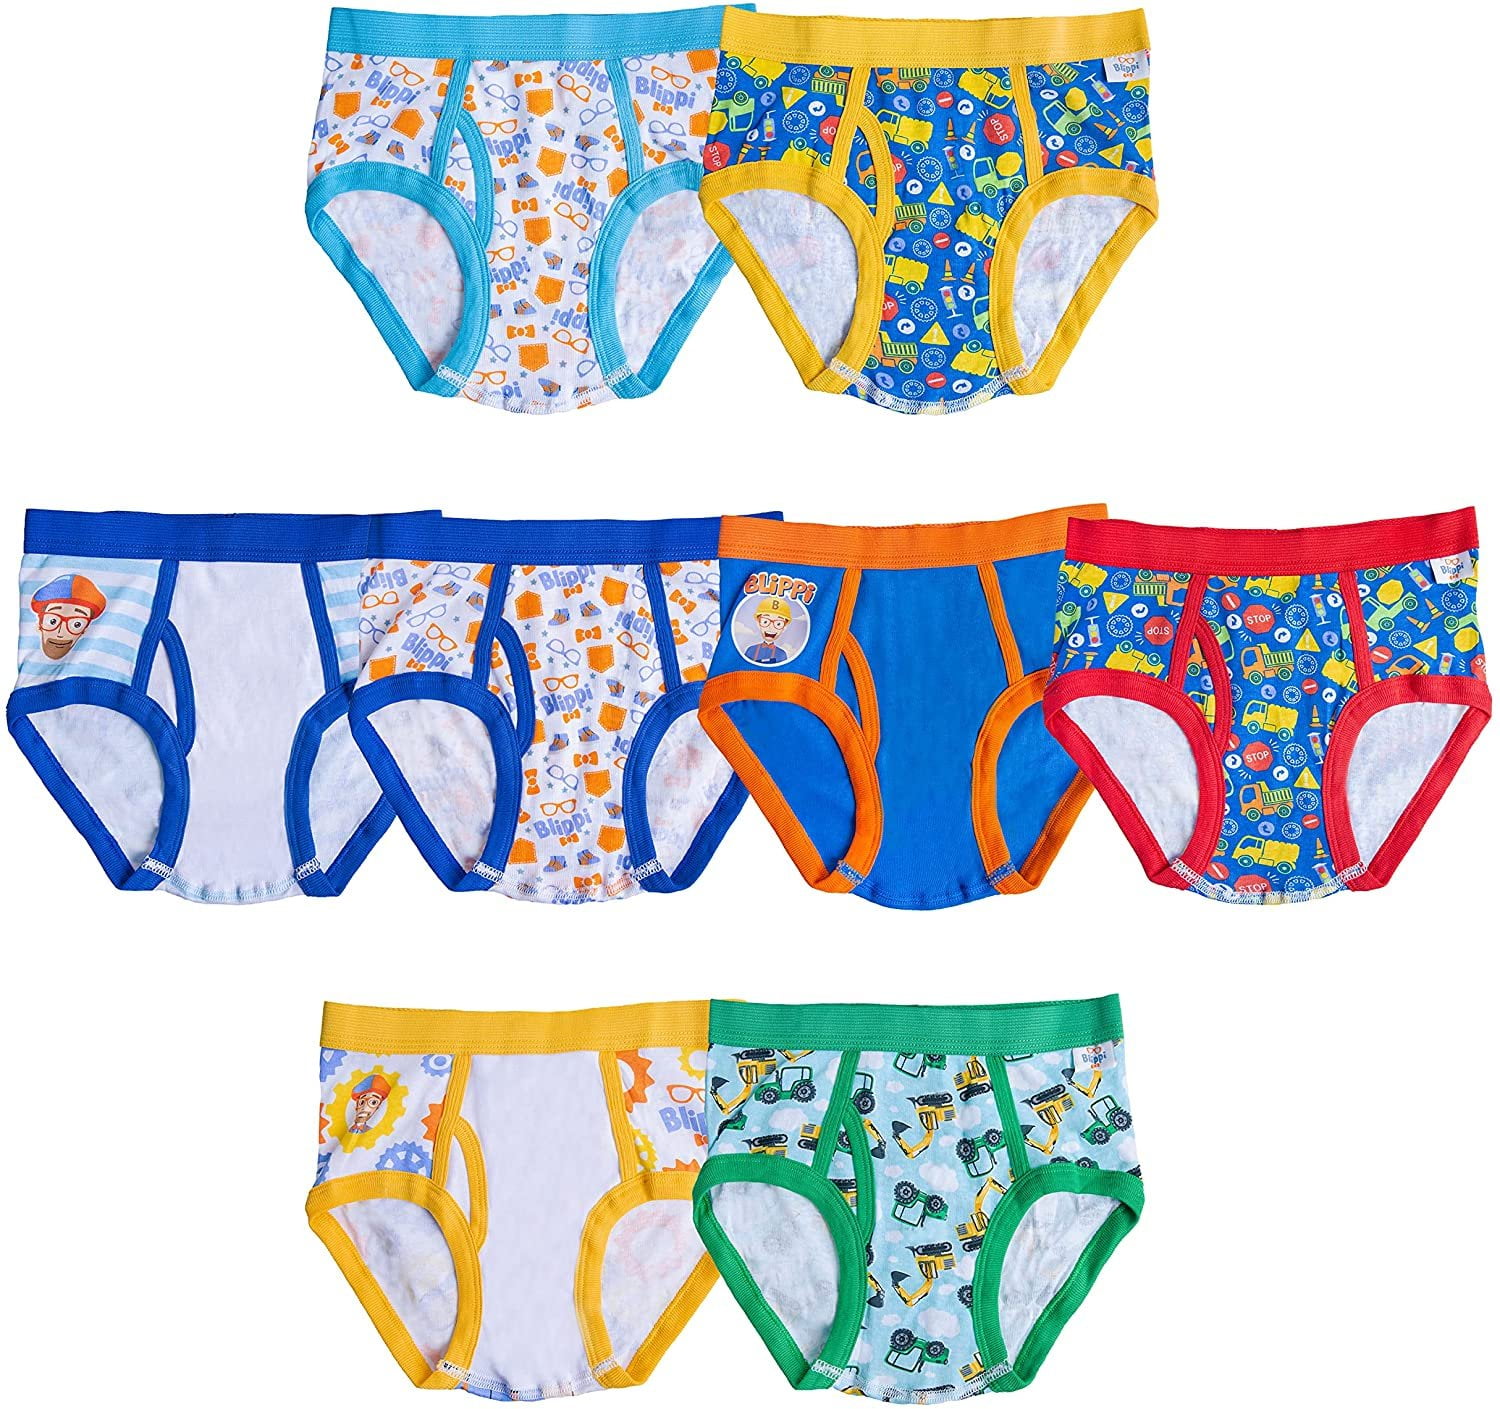 Blippi Boys Underwear - 8-Pack Cotton Toddler/Little Kid/Big Kid Size Briefs  Kids 